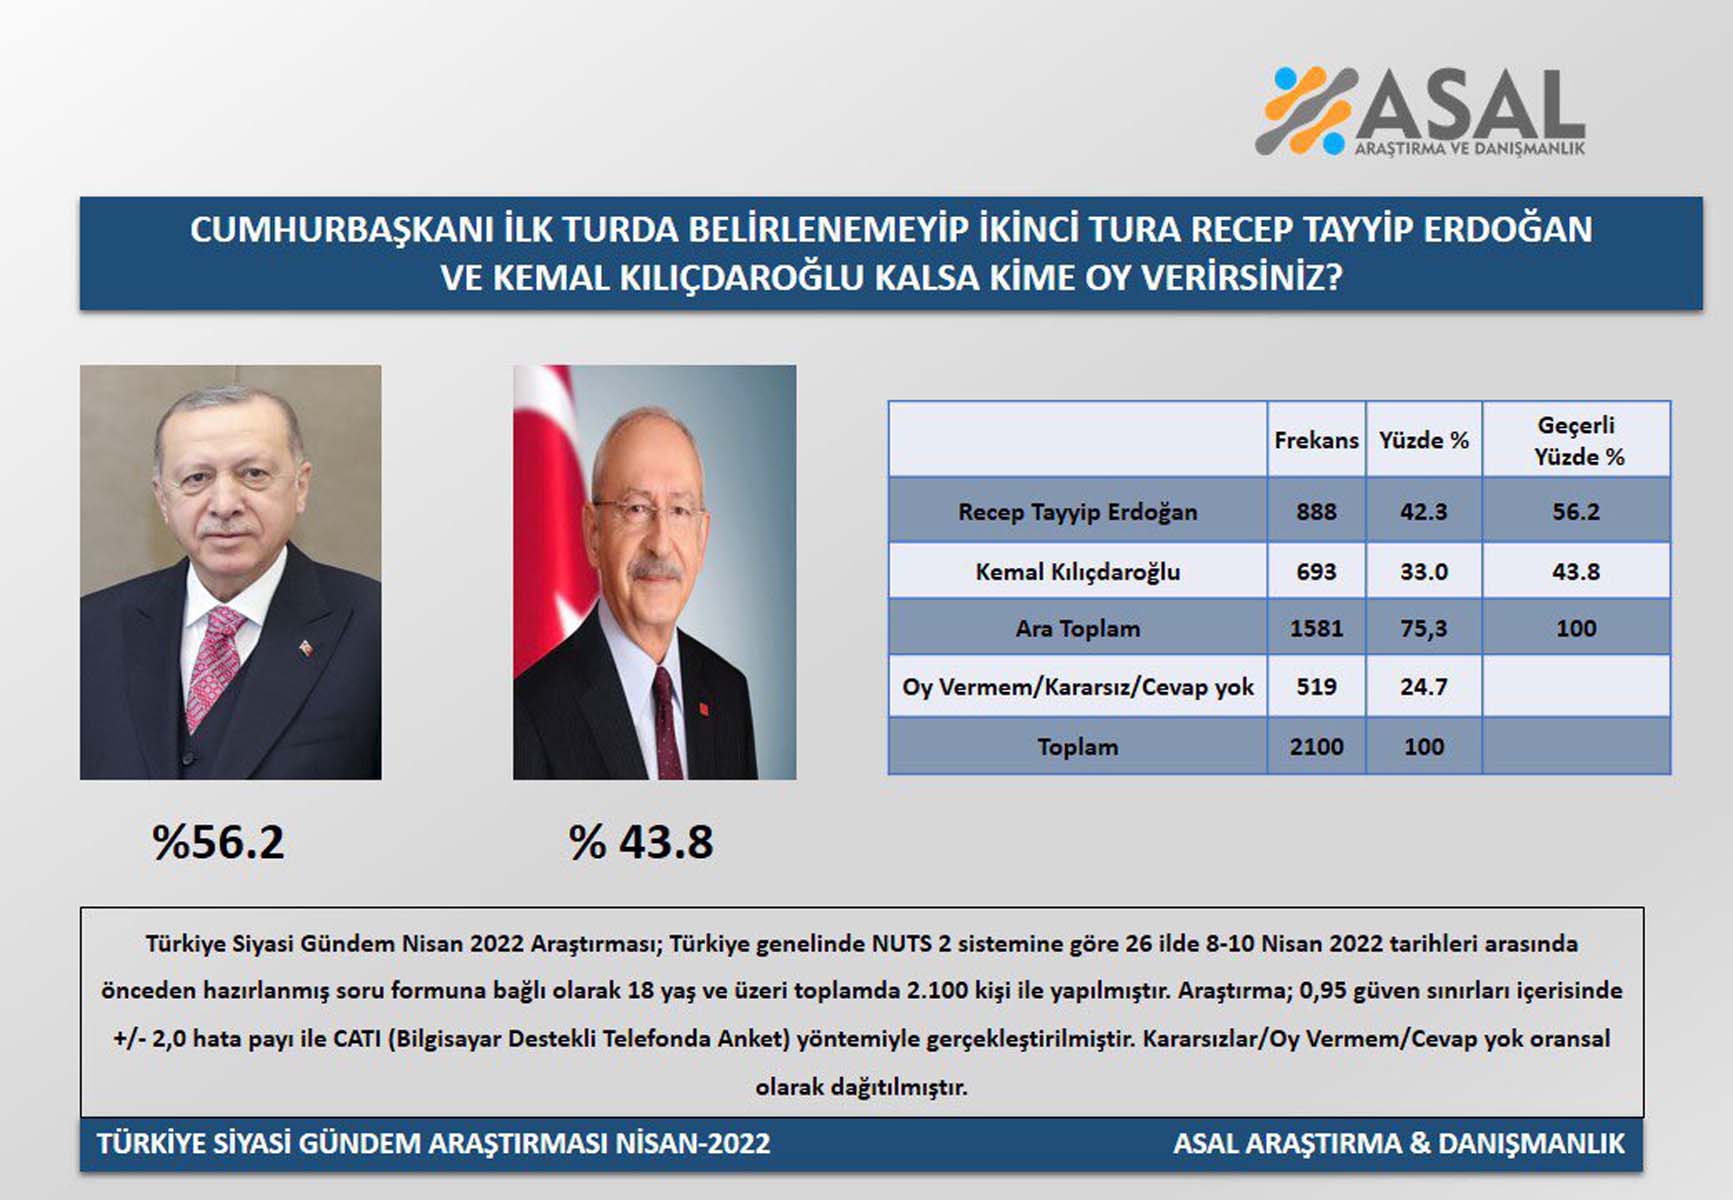 Cumhurbaşkanlığı seçimi ikinci tura kalırsa kim kazanır? Cumhurbaşkanı Erdoğan'a rakip olan Kılıçdaroğlu'na büyük şok! Anketten sonra adaylığını sorgulayacak 